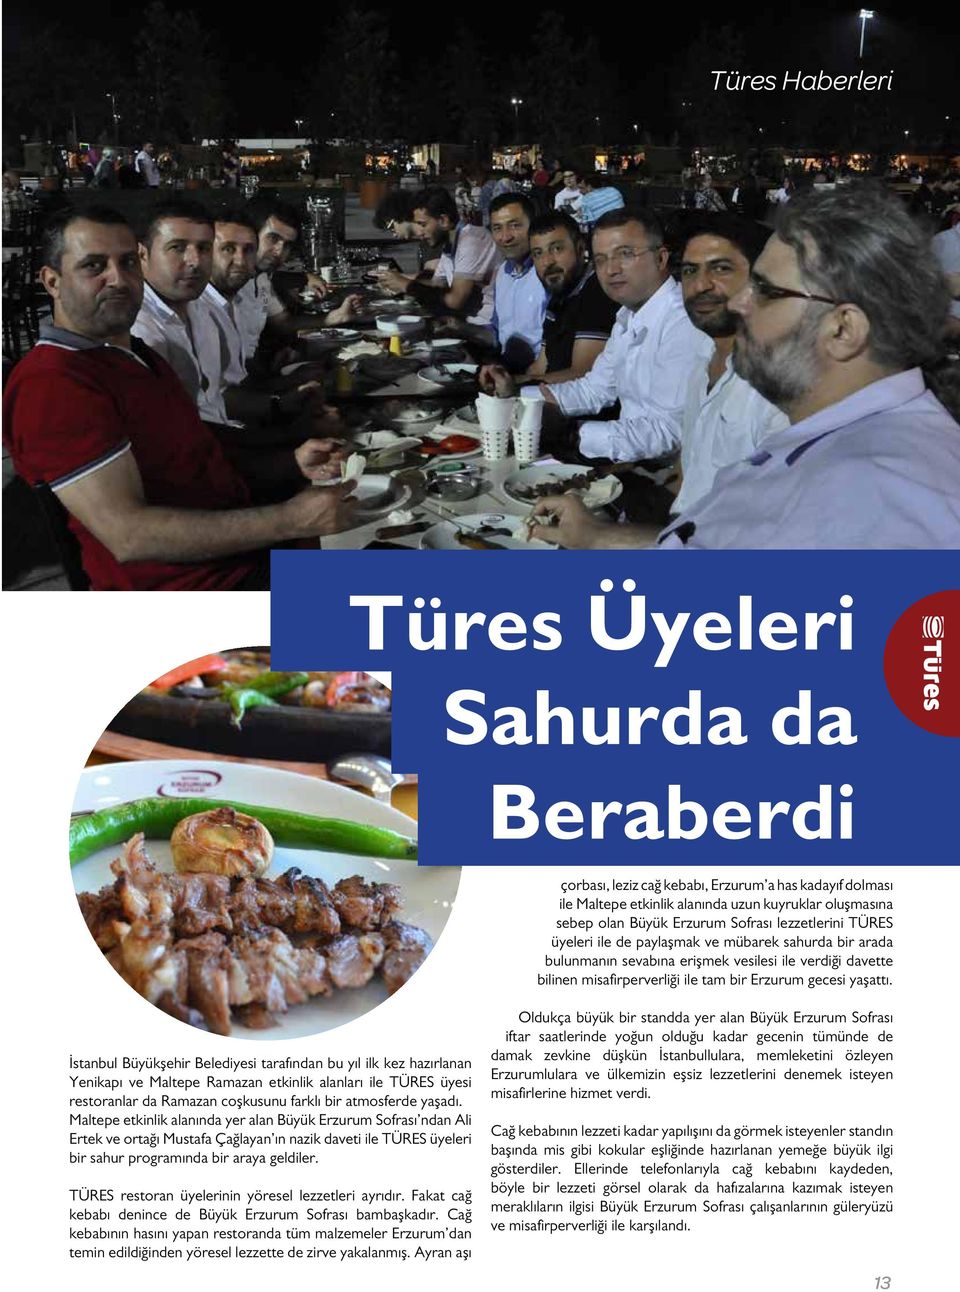 İstanbul Büyükşehir Belediyesi tarafından bu yıl ilk kez hazırlanan Yenikapı ve Maltepe Ramazan etkinlik alanları ile TÜRES üyesi restoranlar da Ramazan coşkusunu farklı bir atmosferde yaşadı.